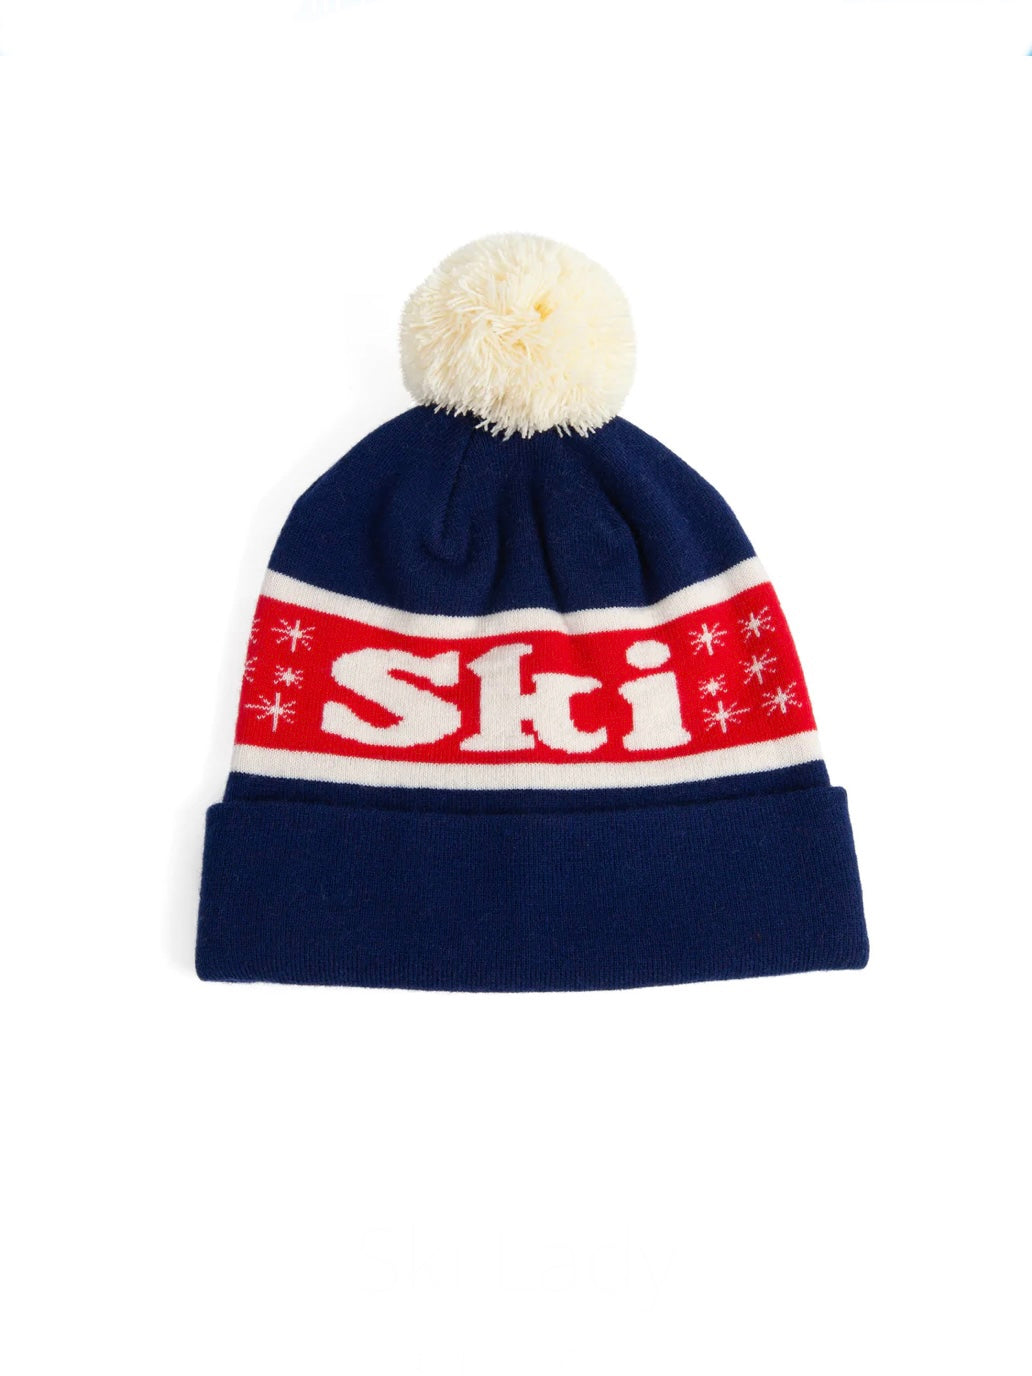 Shady Lady Ski Lady Hat